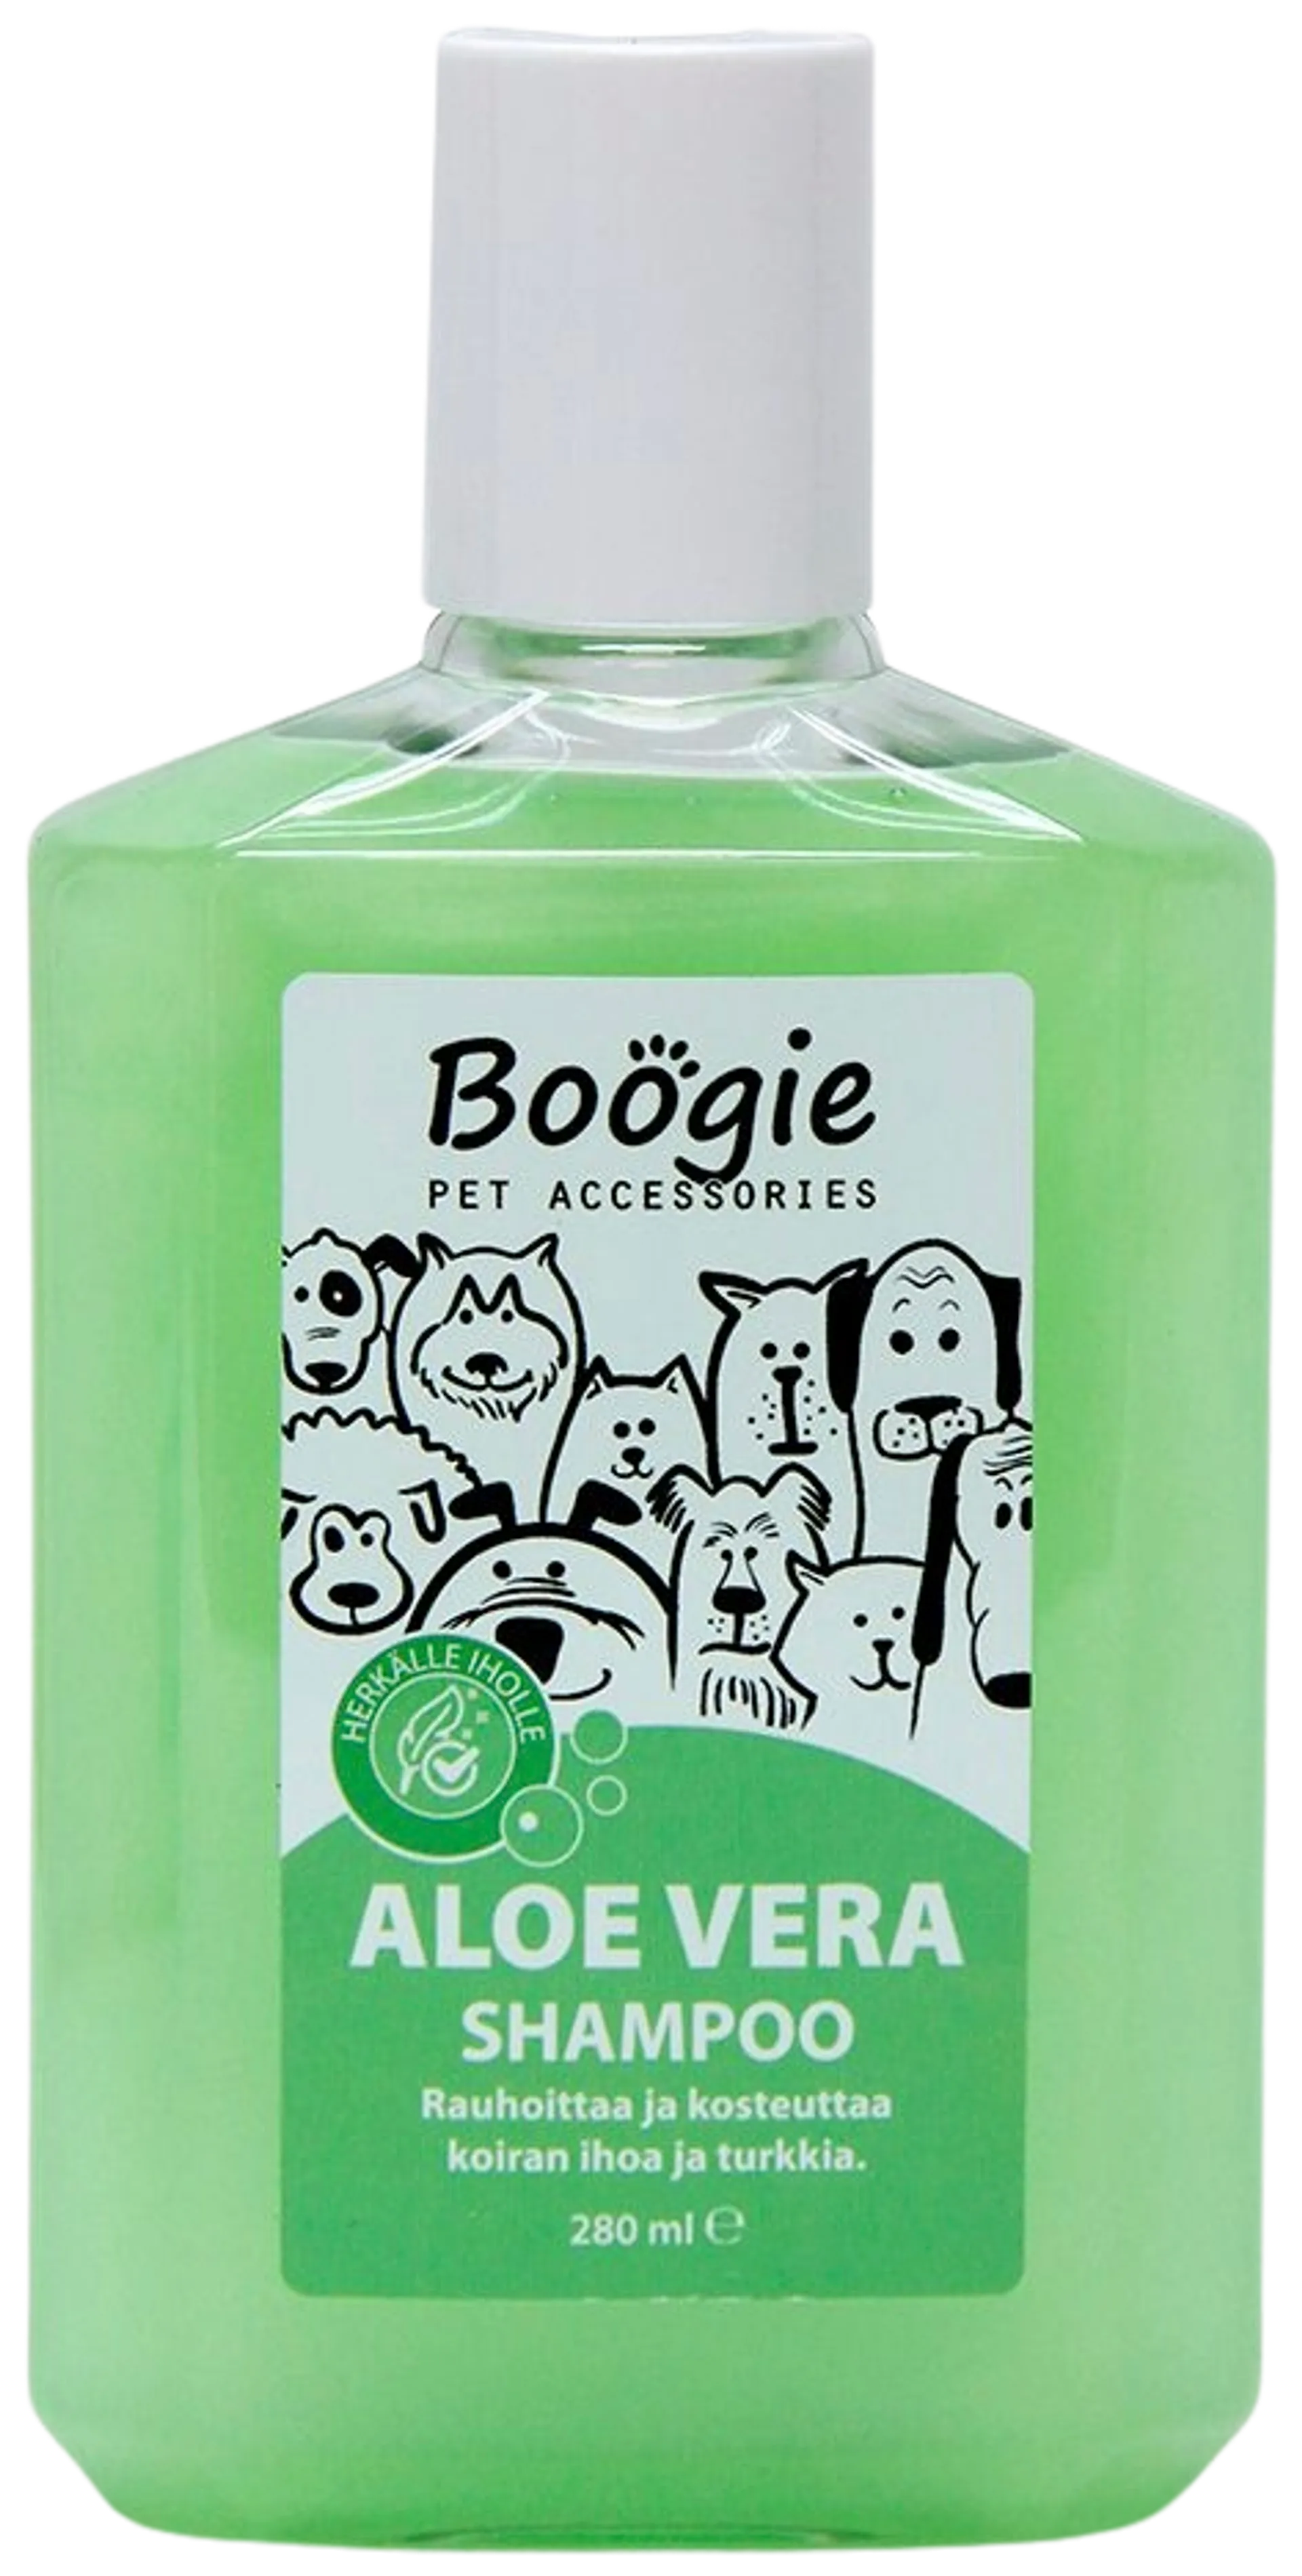 Boogie Aloe Vera Shampoo, 280 ml